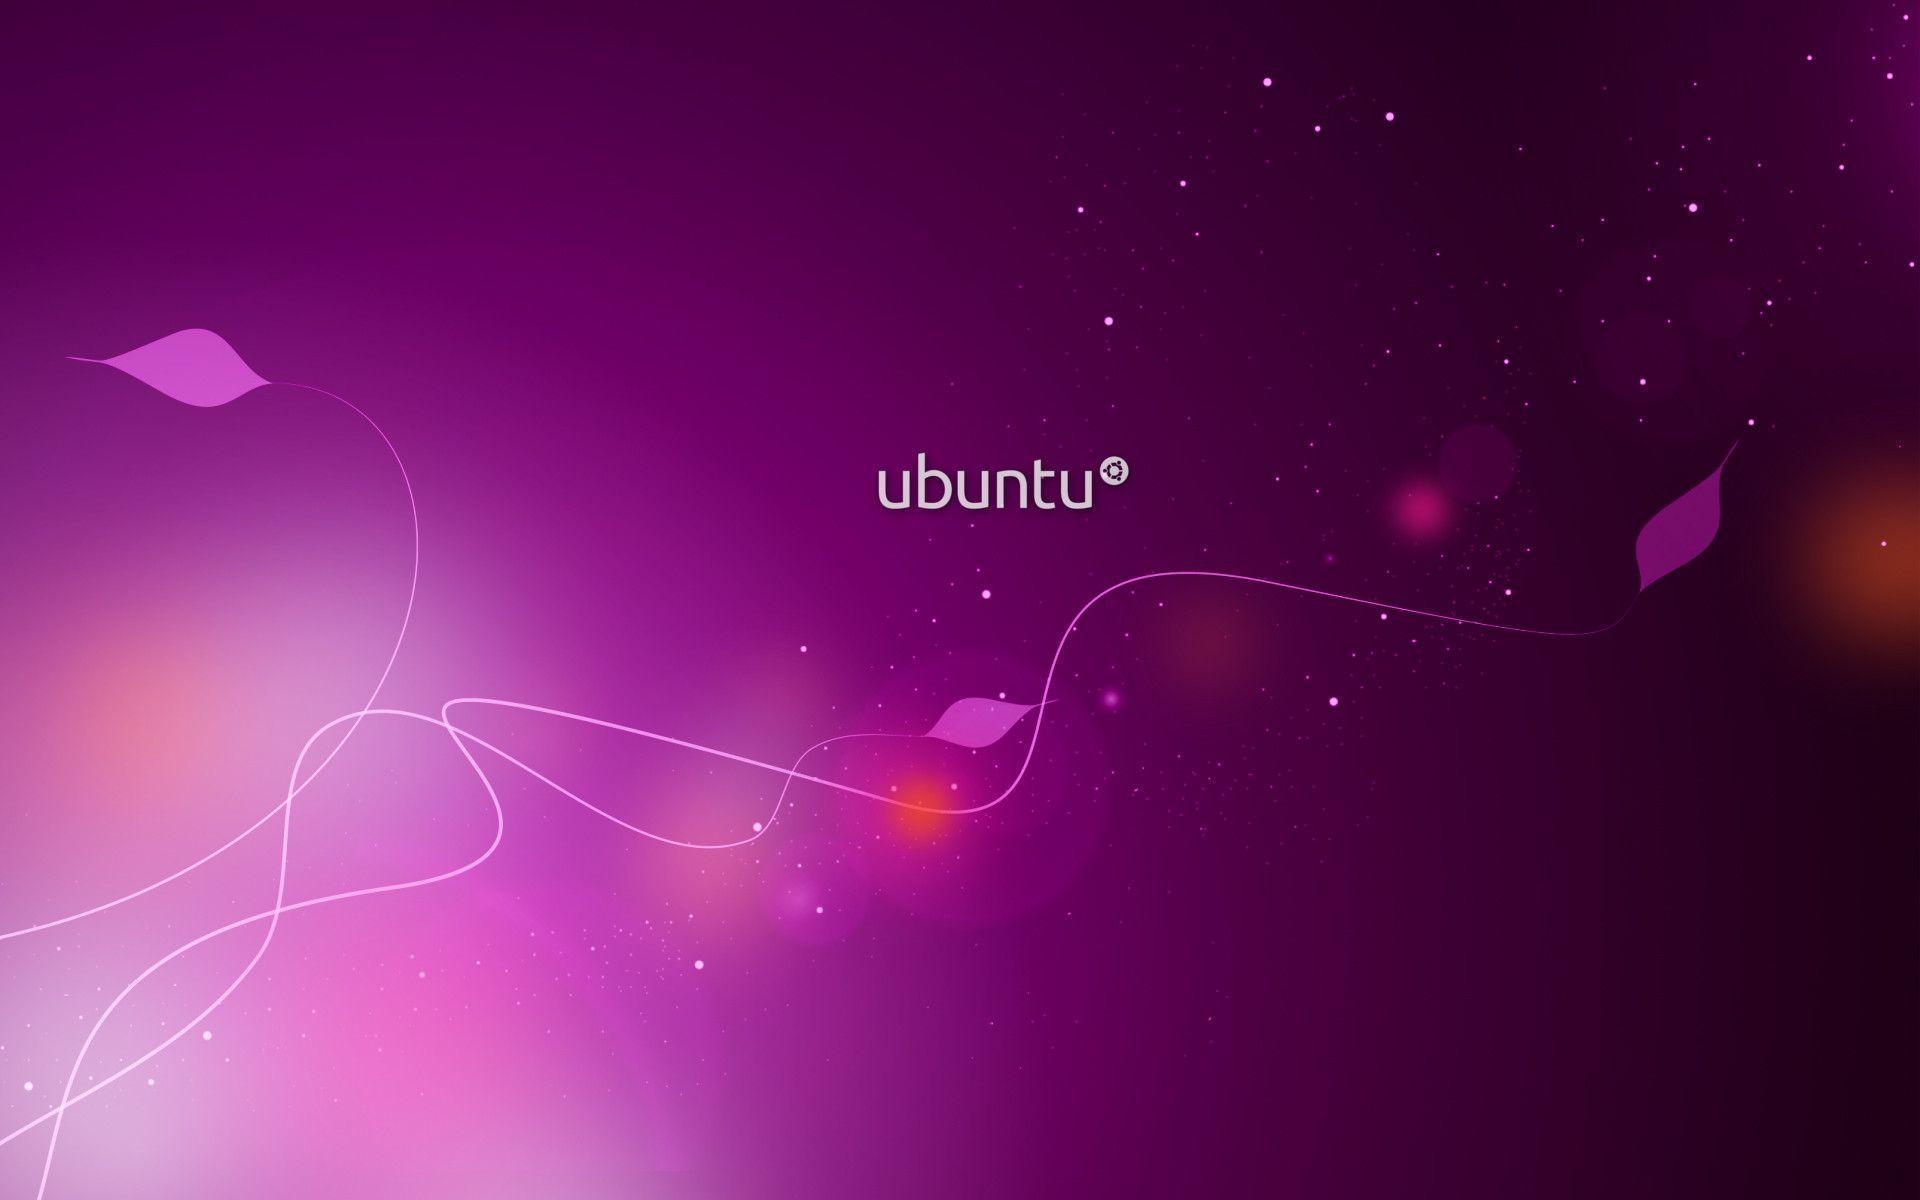 Bộ sưu tập hình nền Ubuntu độc đáo và đa dạng này sẽ làm cho máy tính của bạn trở nên đặc biệt hơn. Hãy truy cập vào đó để tìm kiếm những hình ảnh đầy sáng tạo và mới lạ nhất và trang trí cho desktop của mình thật độc đáo.